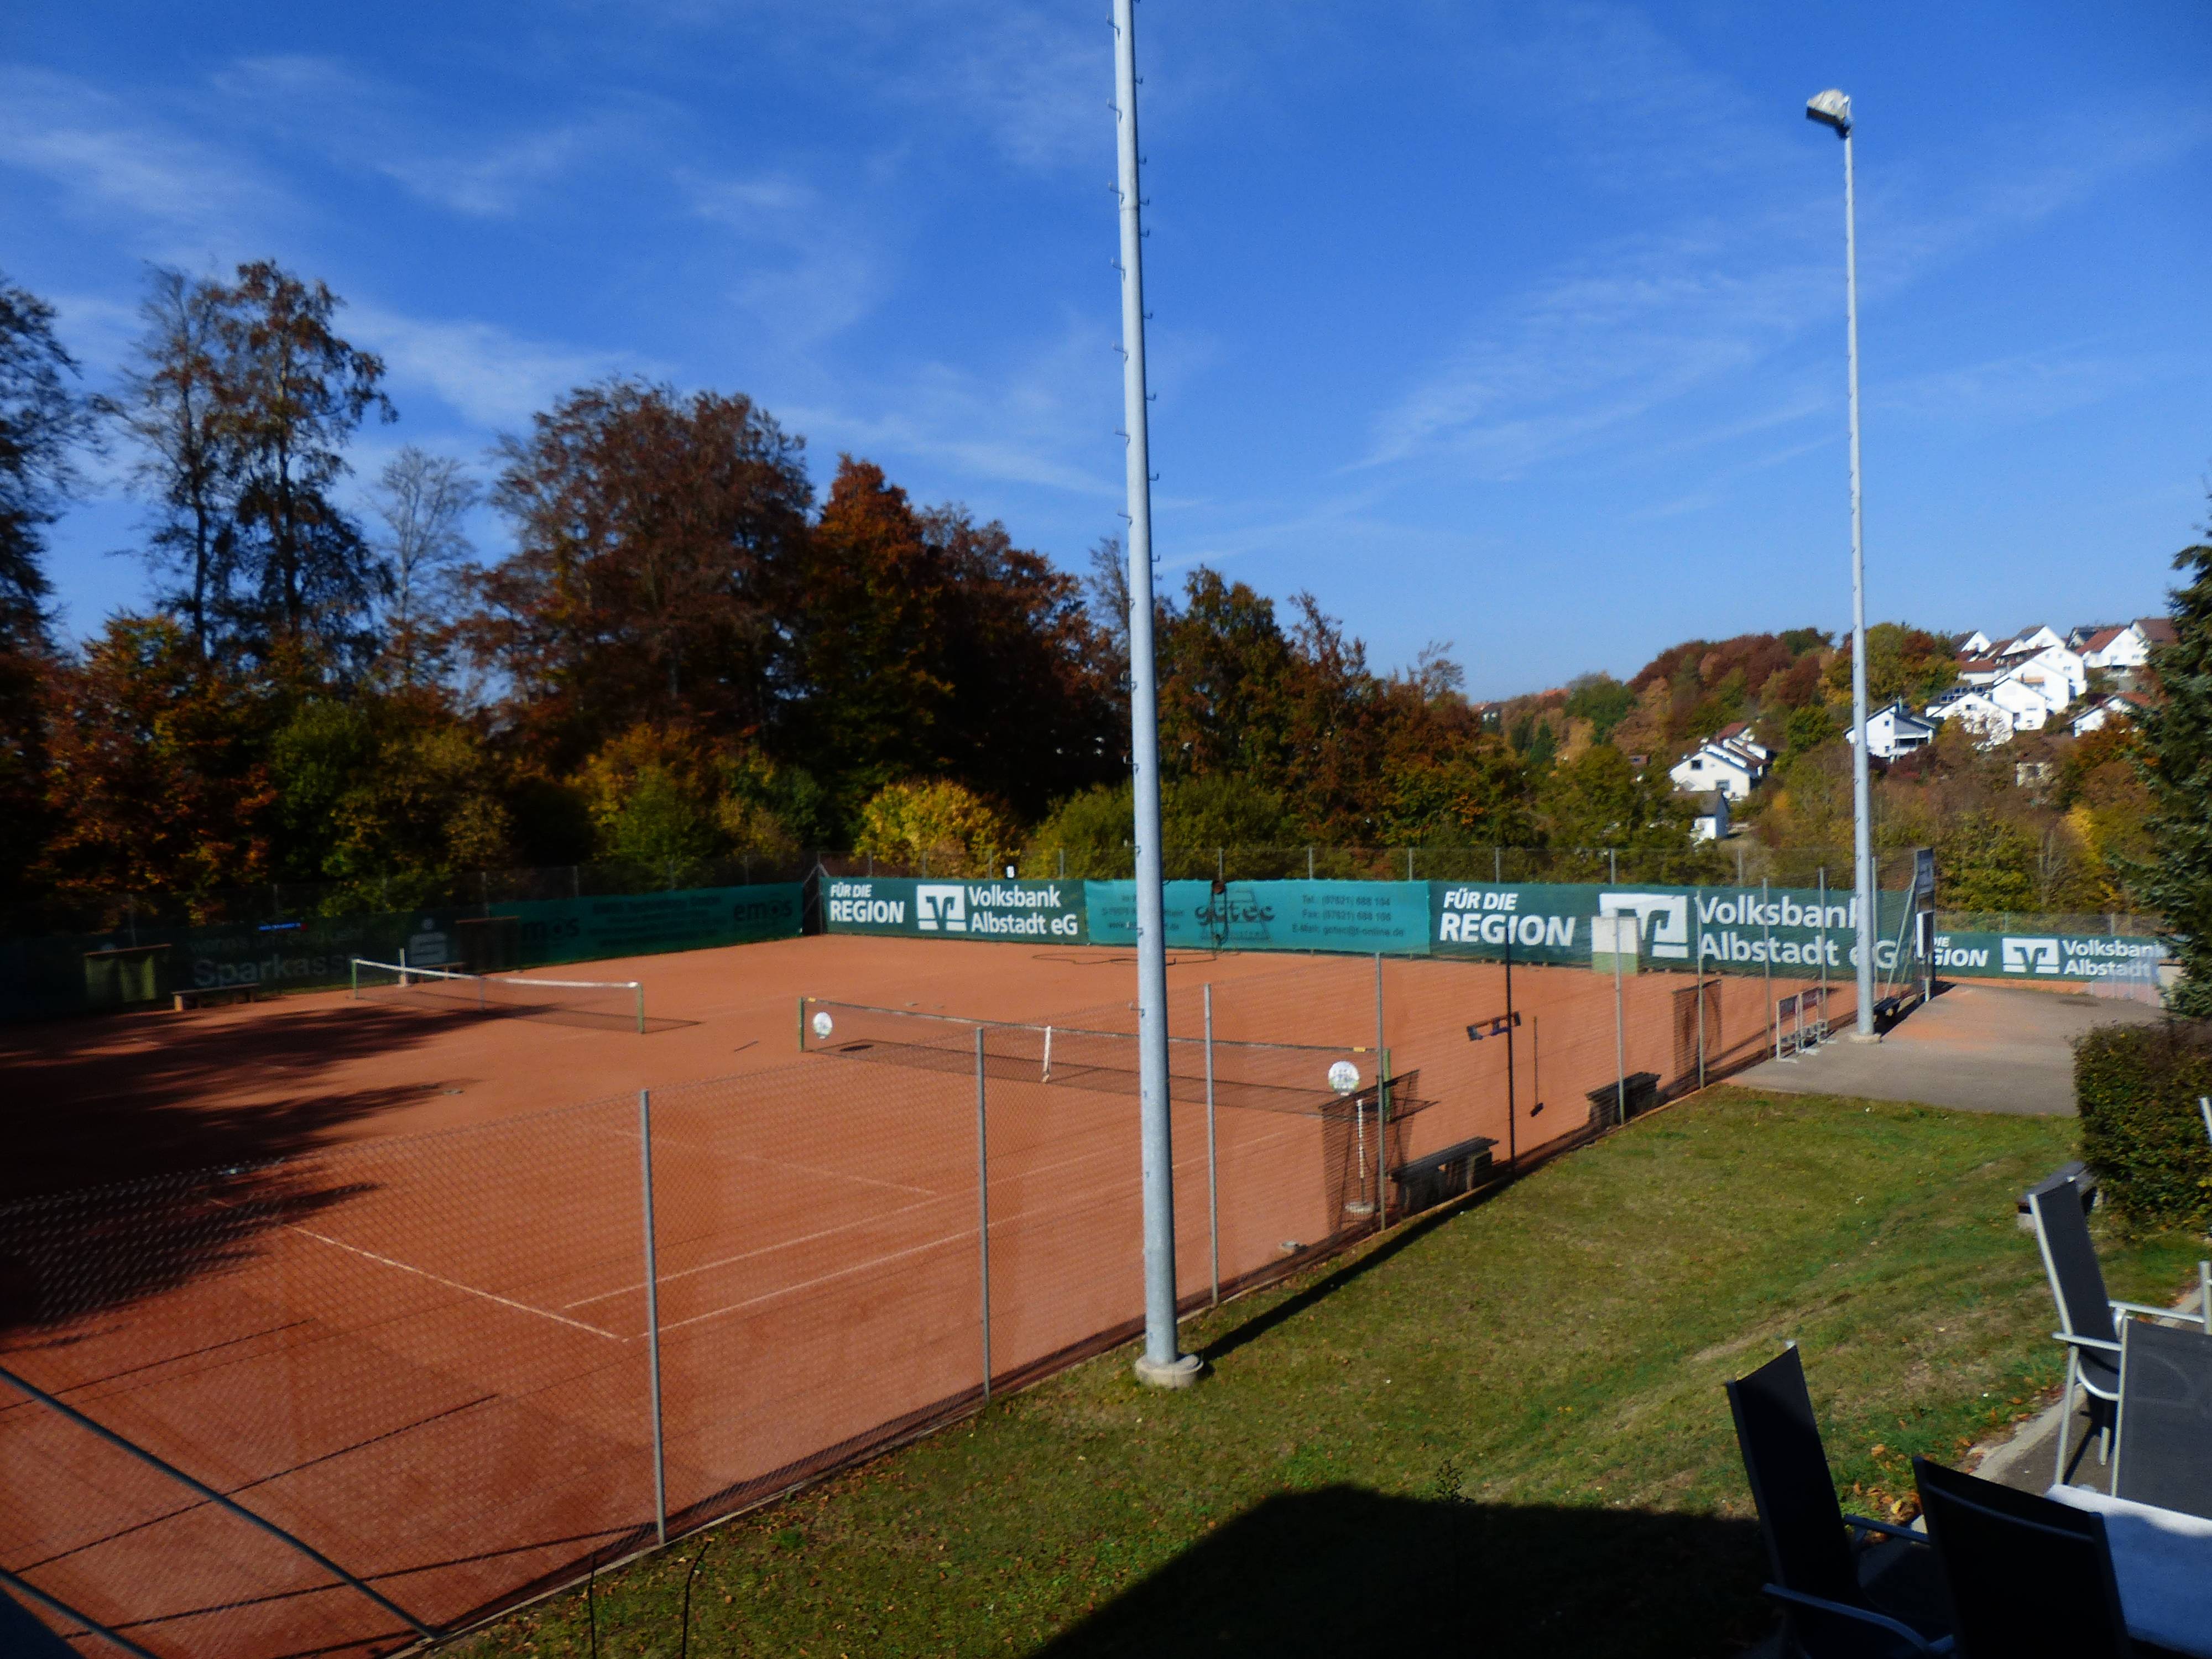  Tennisplatz 